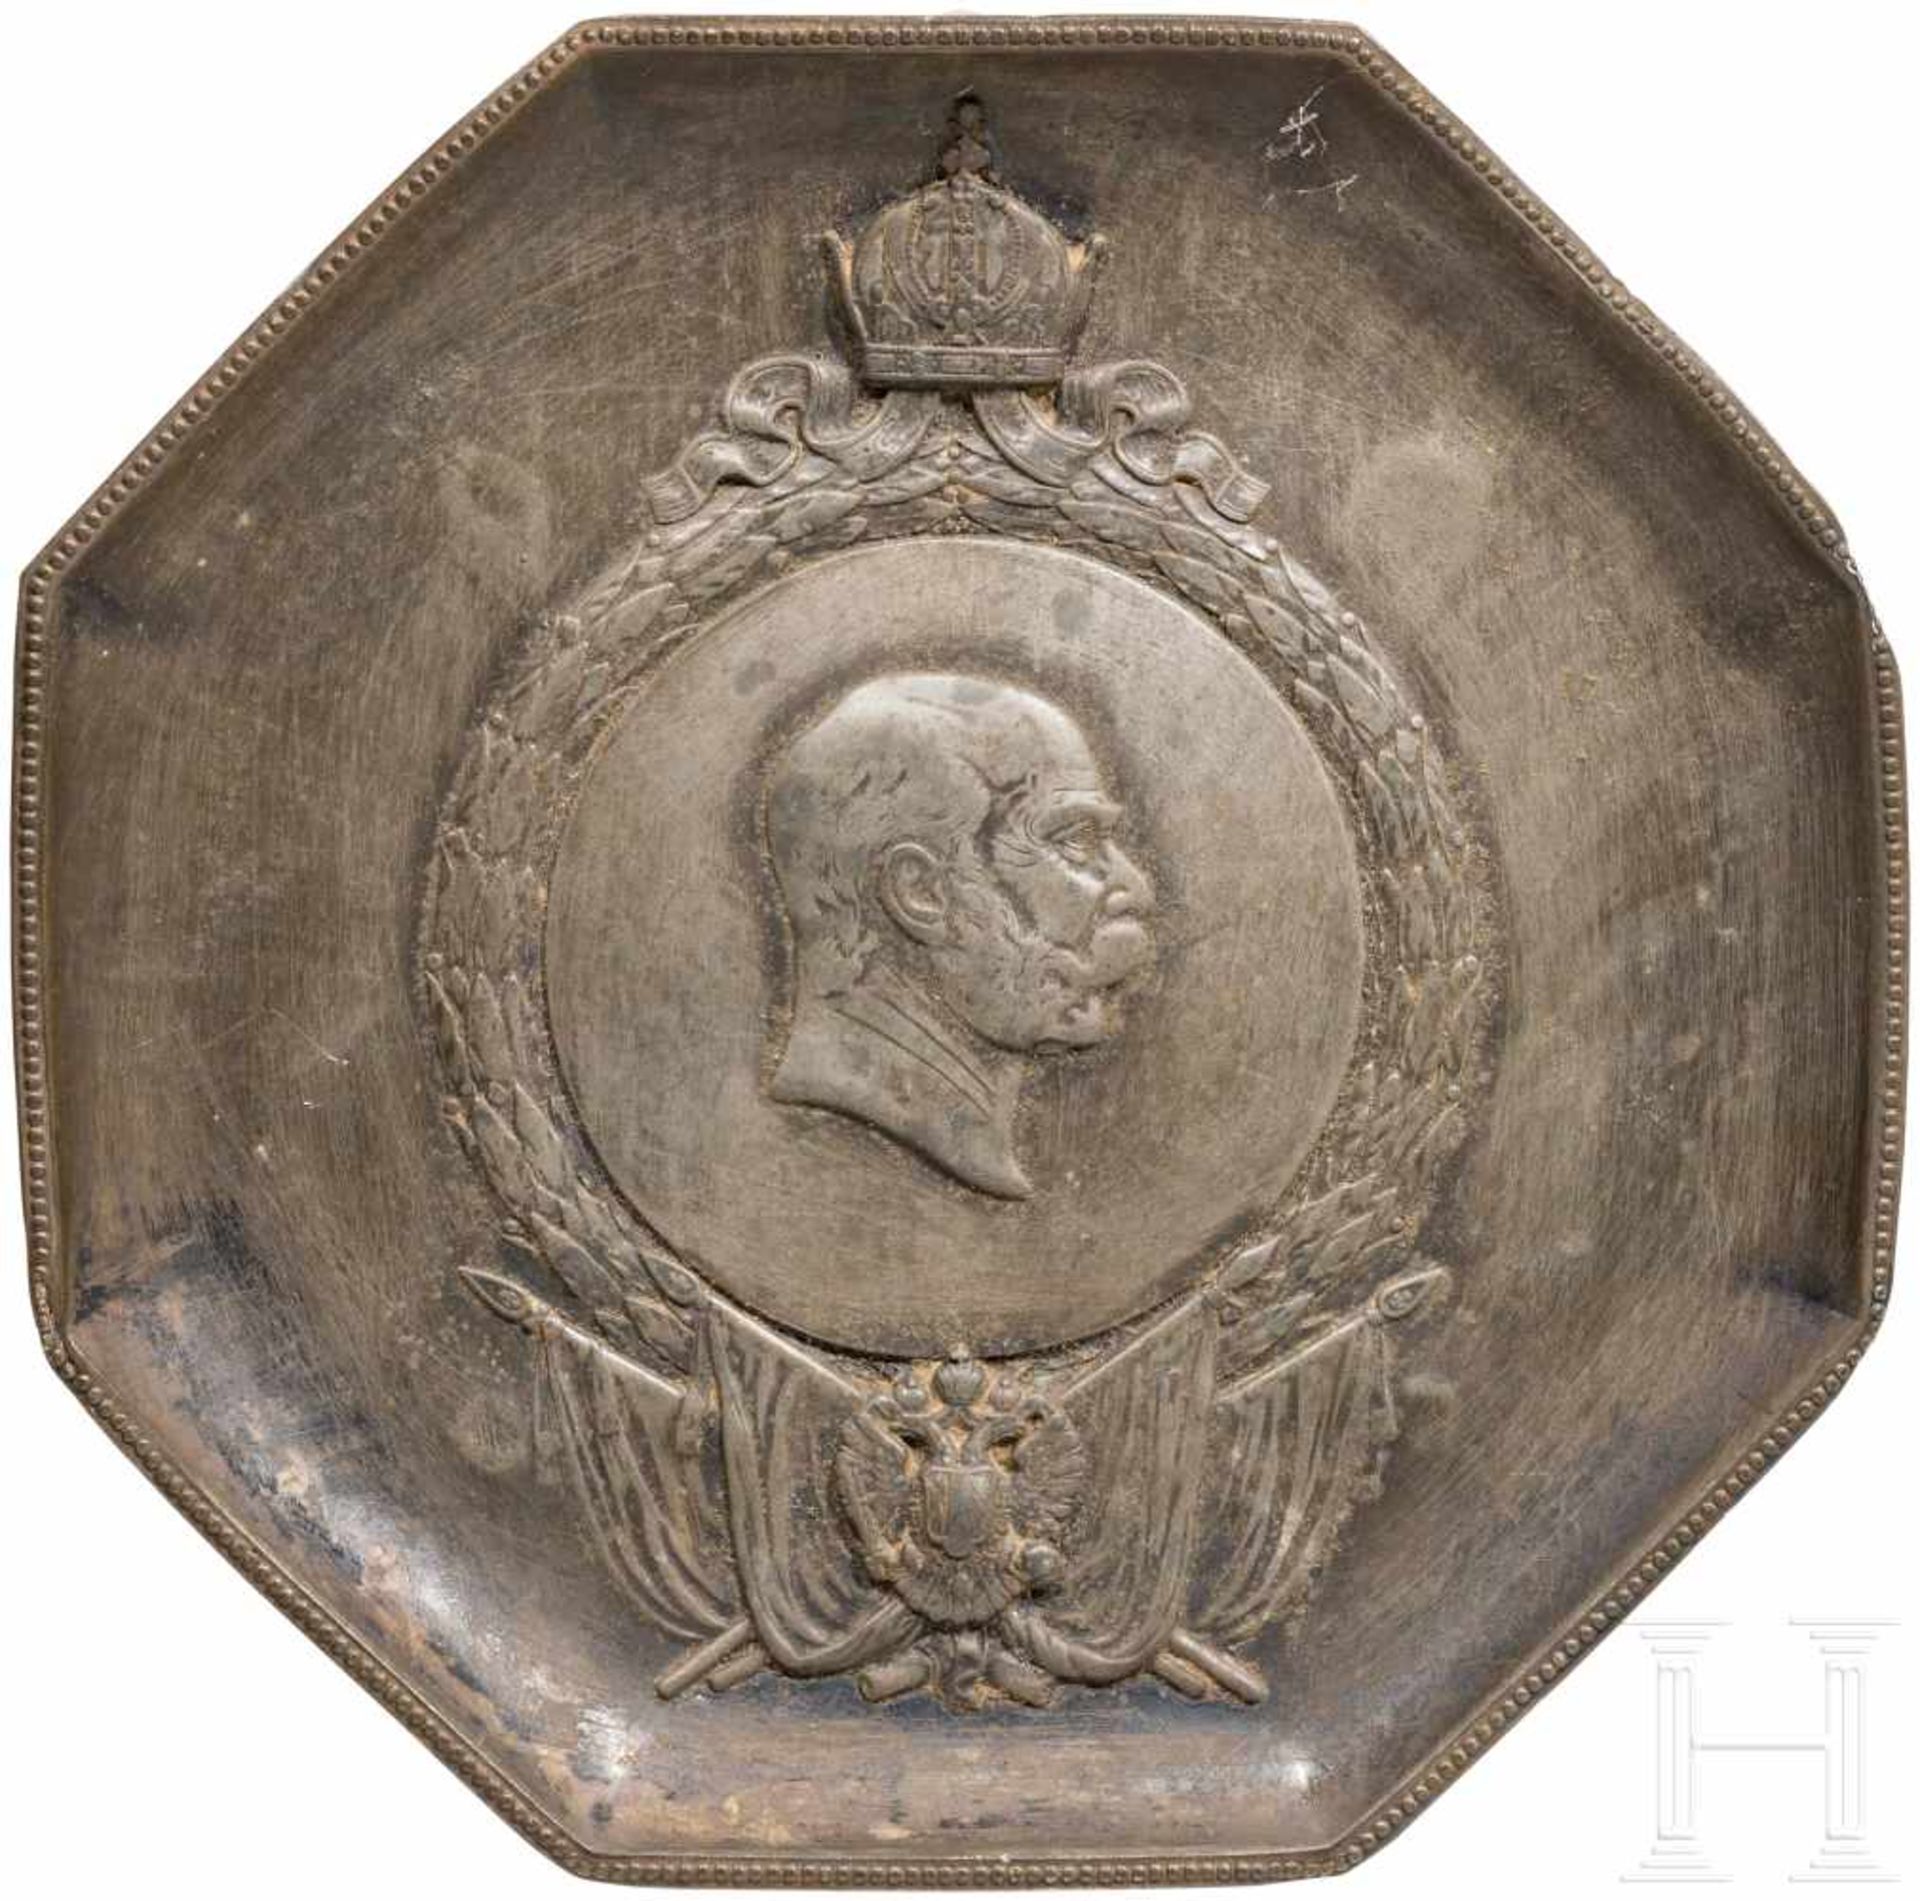 Emperor Franz Josef I. - tin plate with portraitAchteckige Form mit leicht hochgezogenem Rand. Im